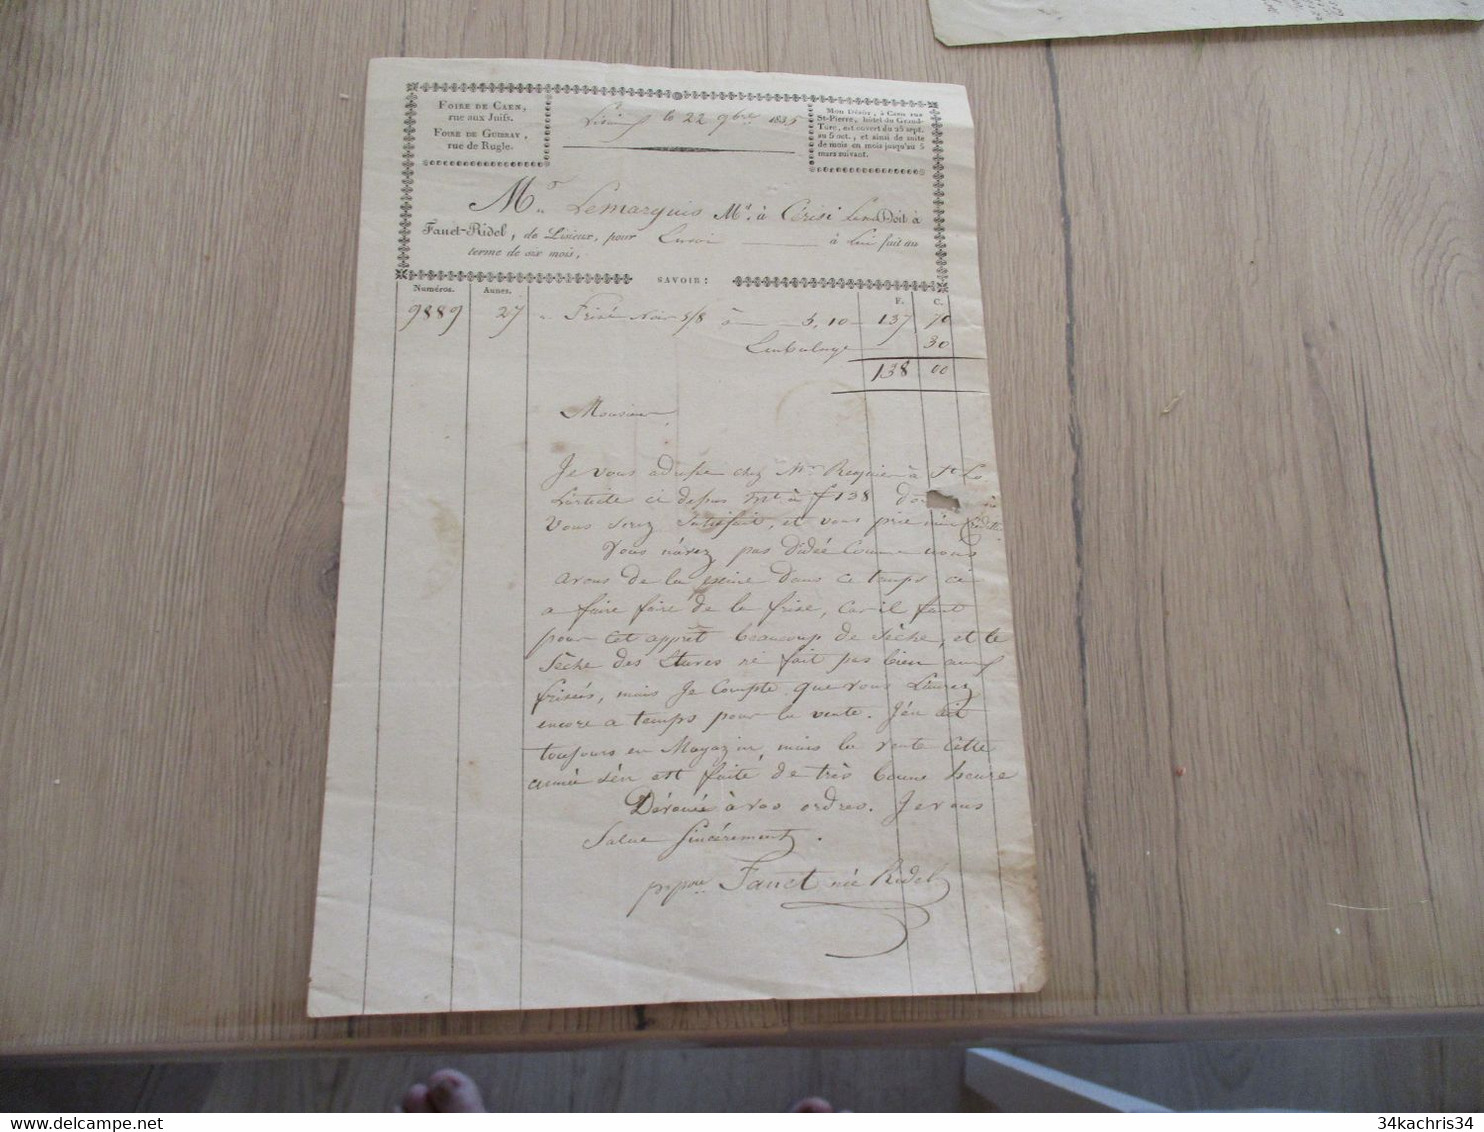 Lettre De Voiture Diligence Roulage Fanet Ridel Lisieux 1835 - Transporte